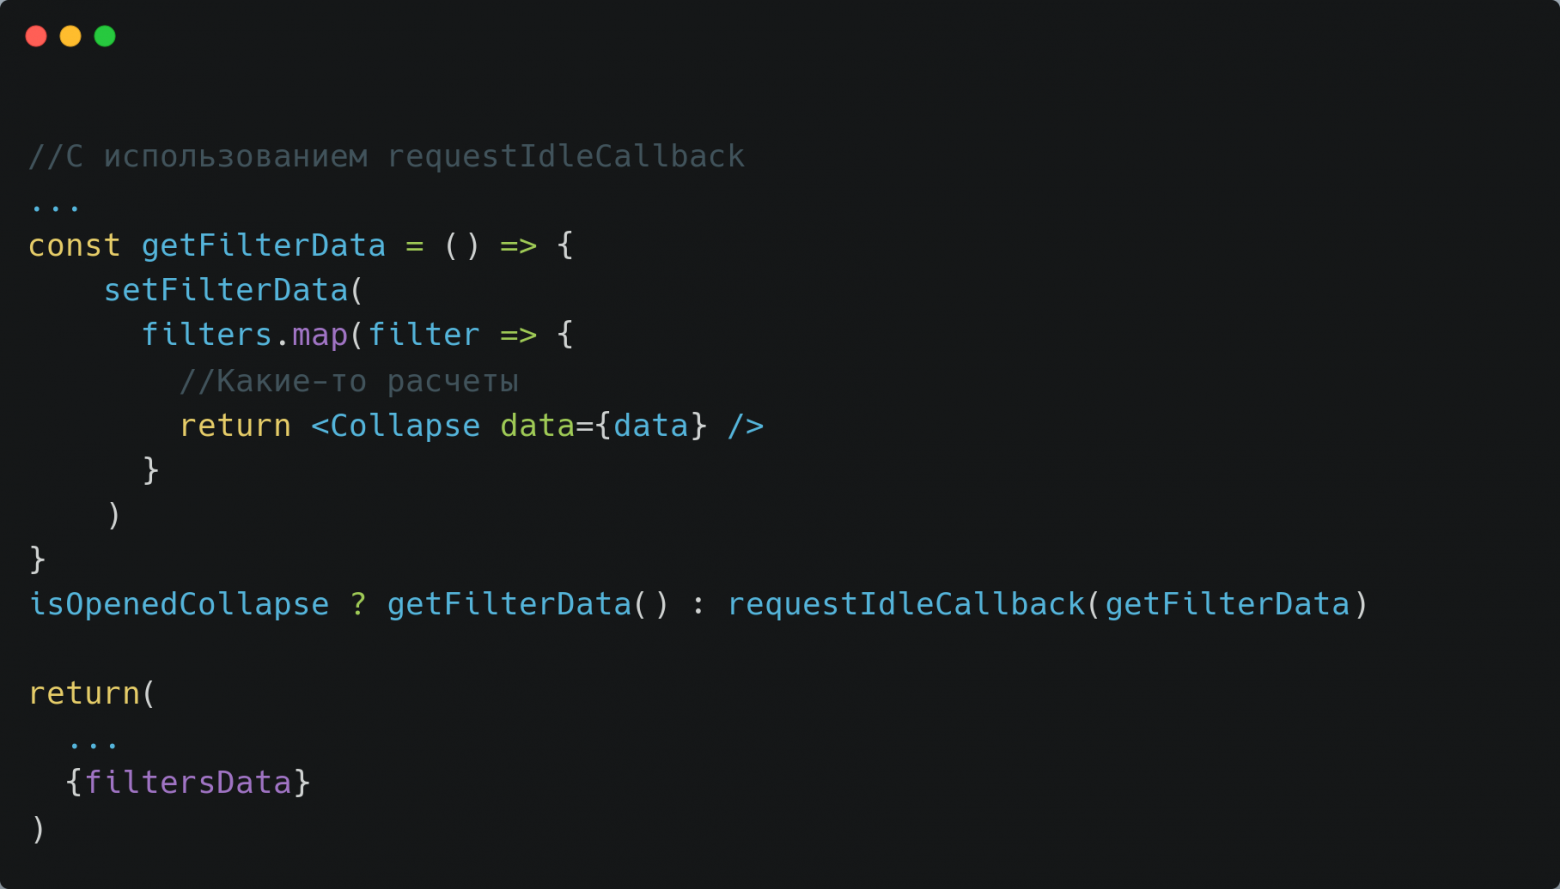 Упрощенный код с requestIdleCallback